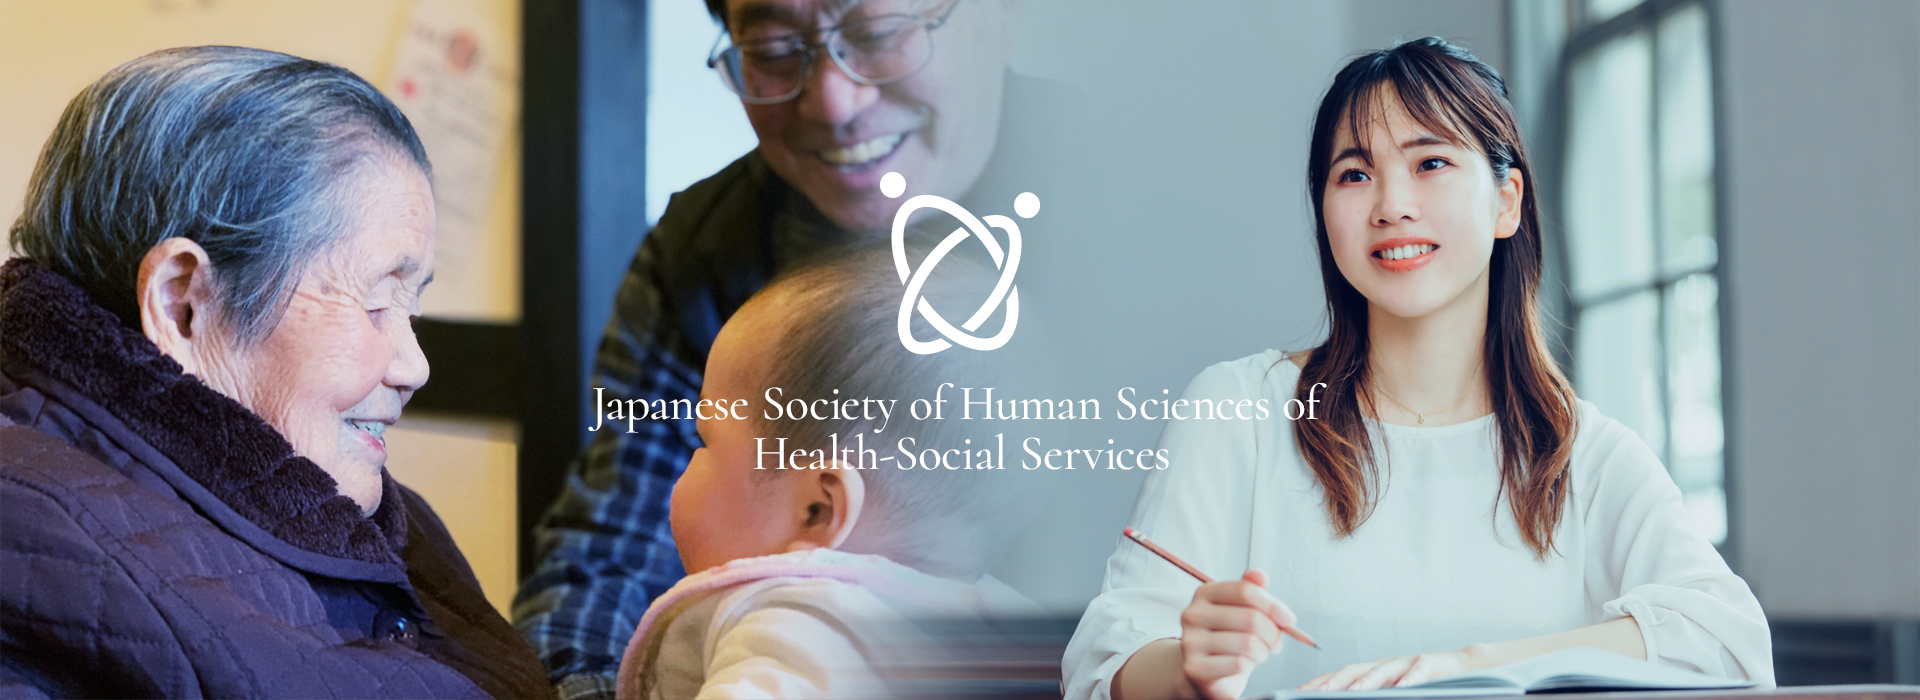 日本保健福祉学会とは、人びとの思いや生活にもっとも近い科学のひとつです。当事者の立場に立ち、当事者に寄り添い、人びとのいのちを守り、生活を支える学問です。